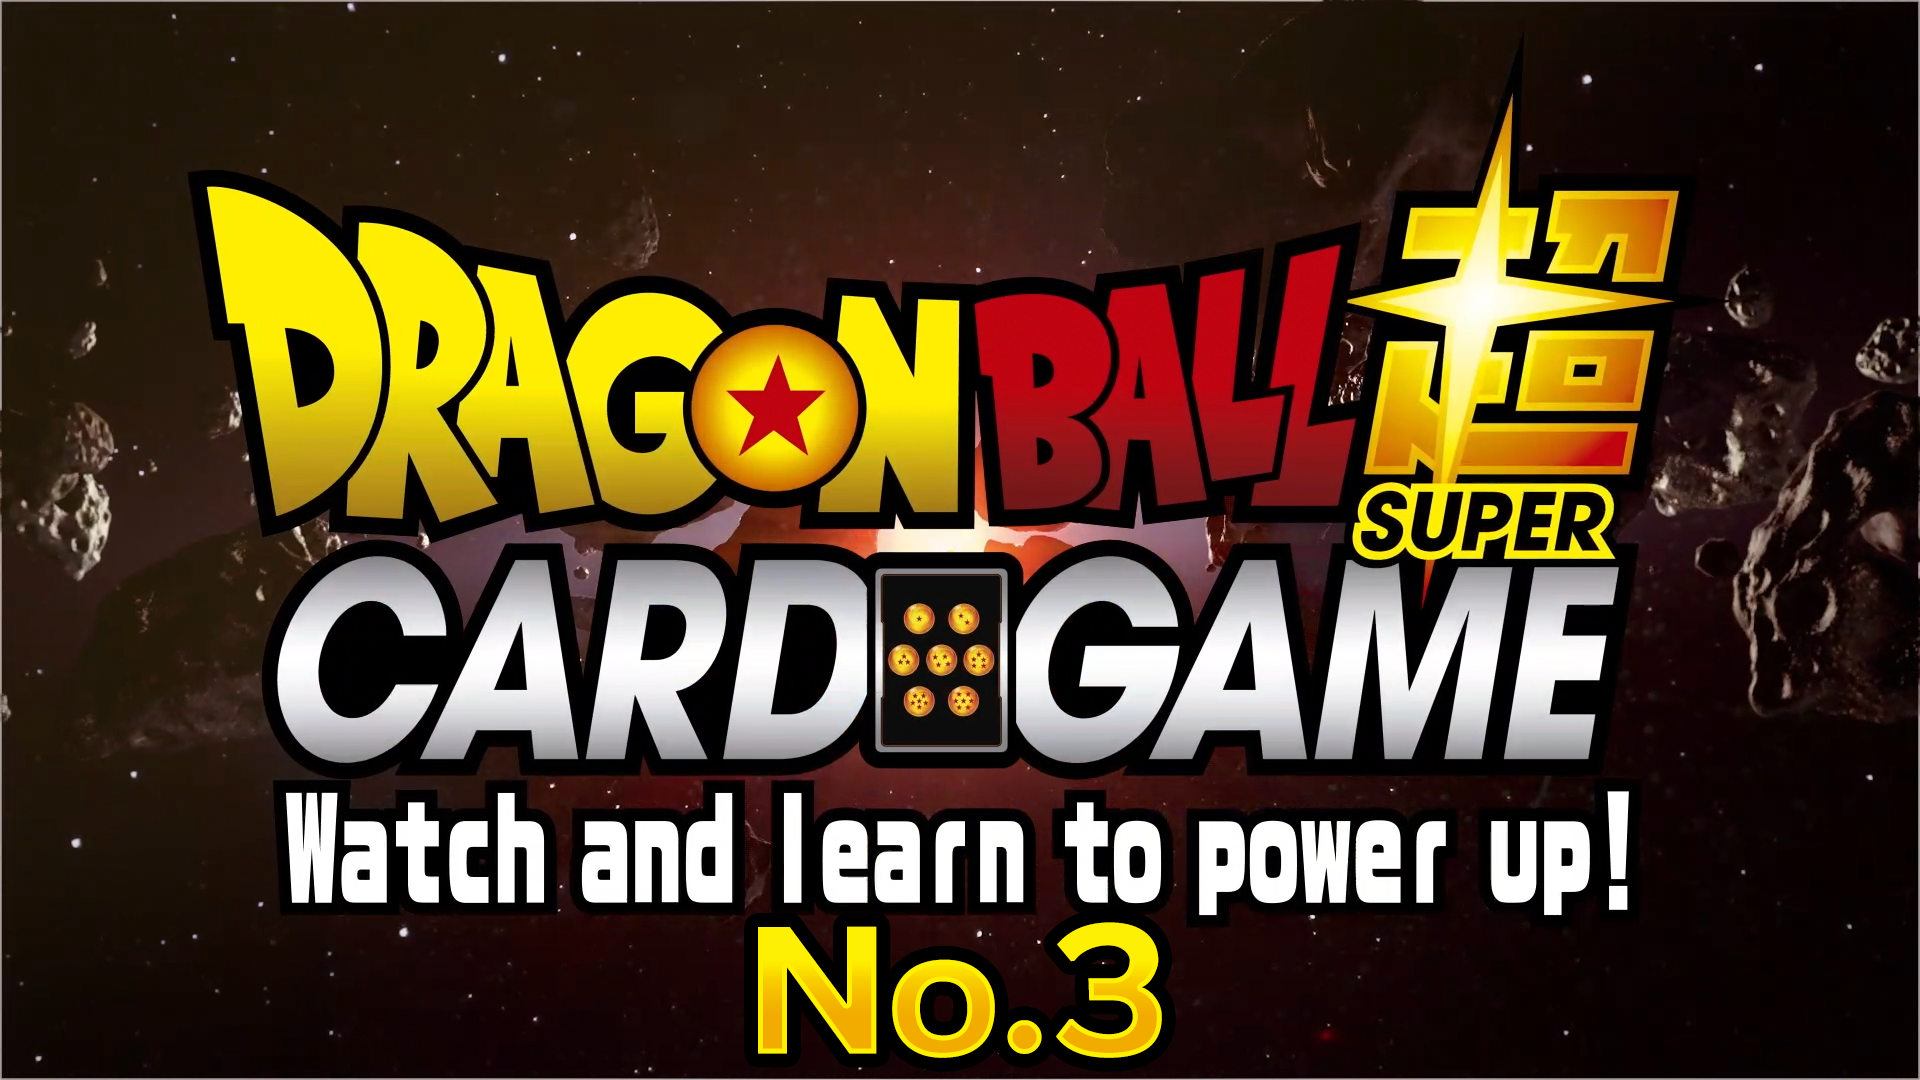 ドラゴンボール超カードゲーム Watch and learn to power up！ No.3